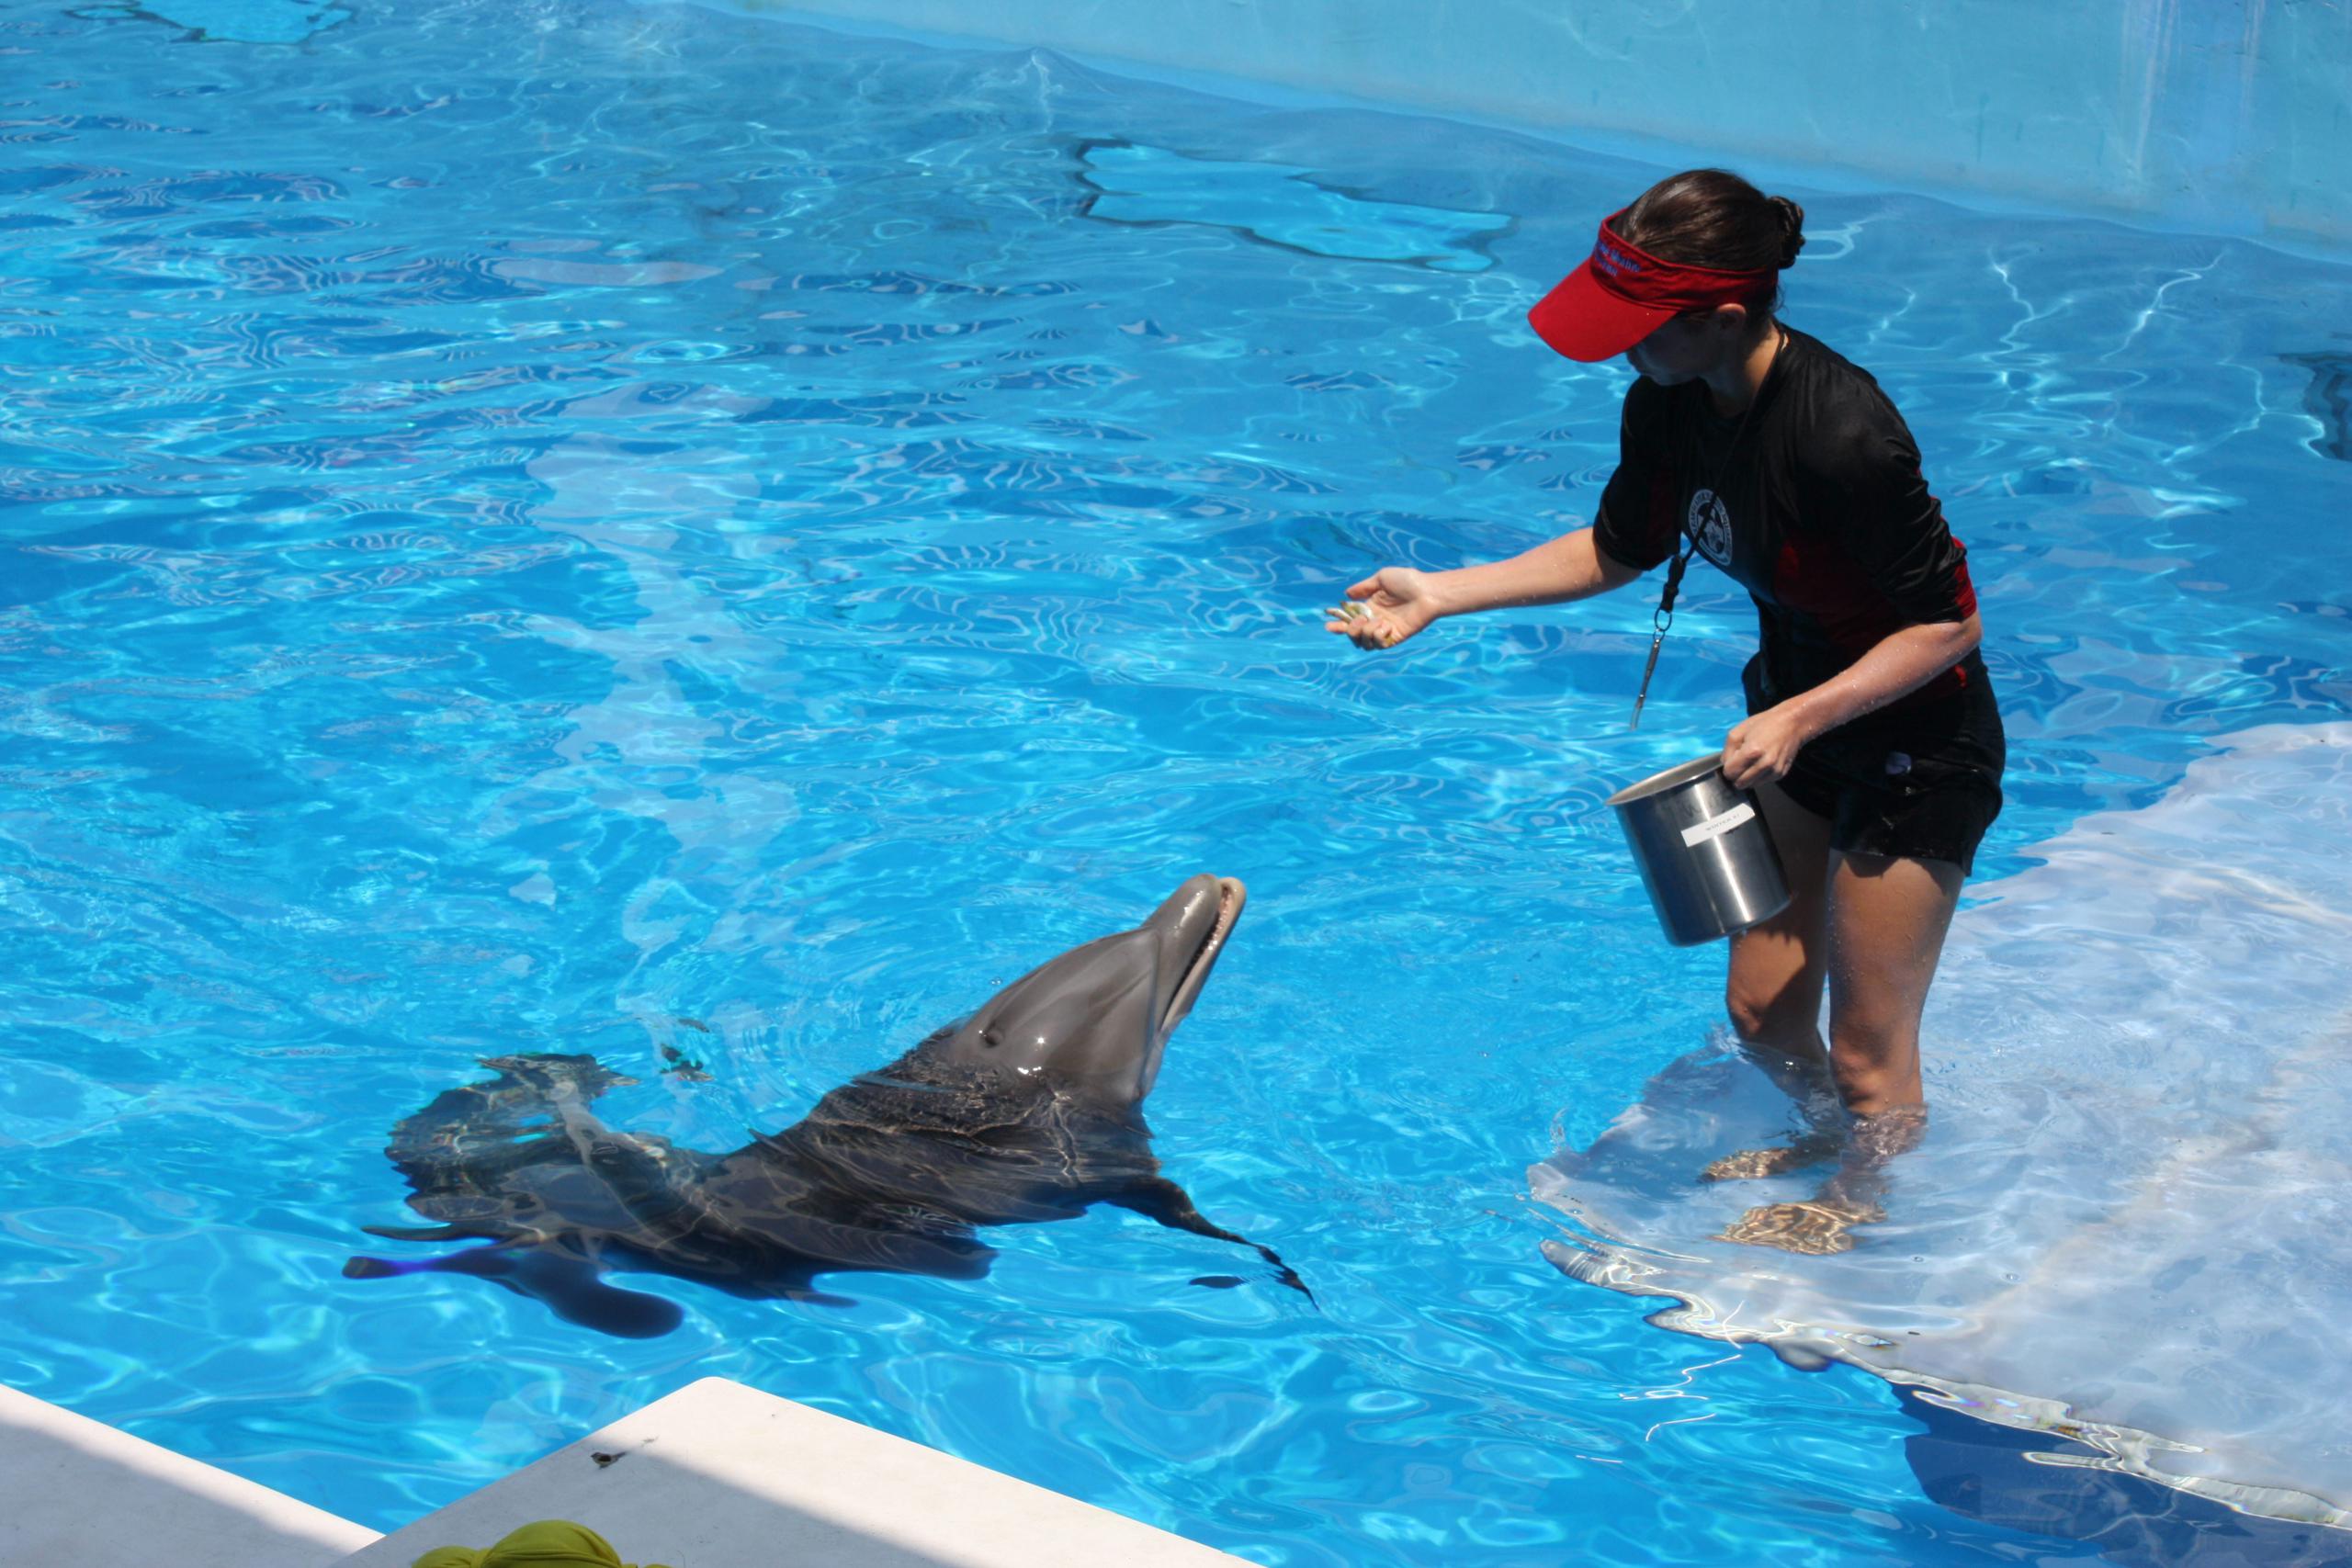 La delfín Winter, protagonista de la conmovedora "Dolphin Tale", en una fotografía de archivo. EFE/Marina Infante
